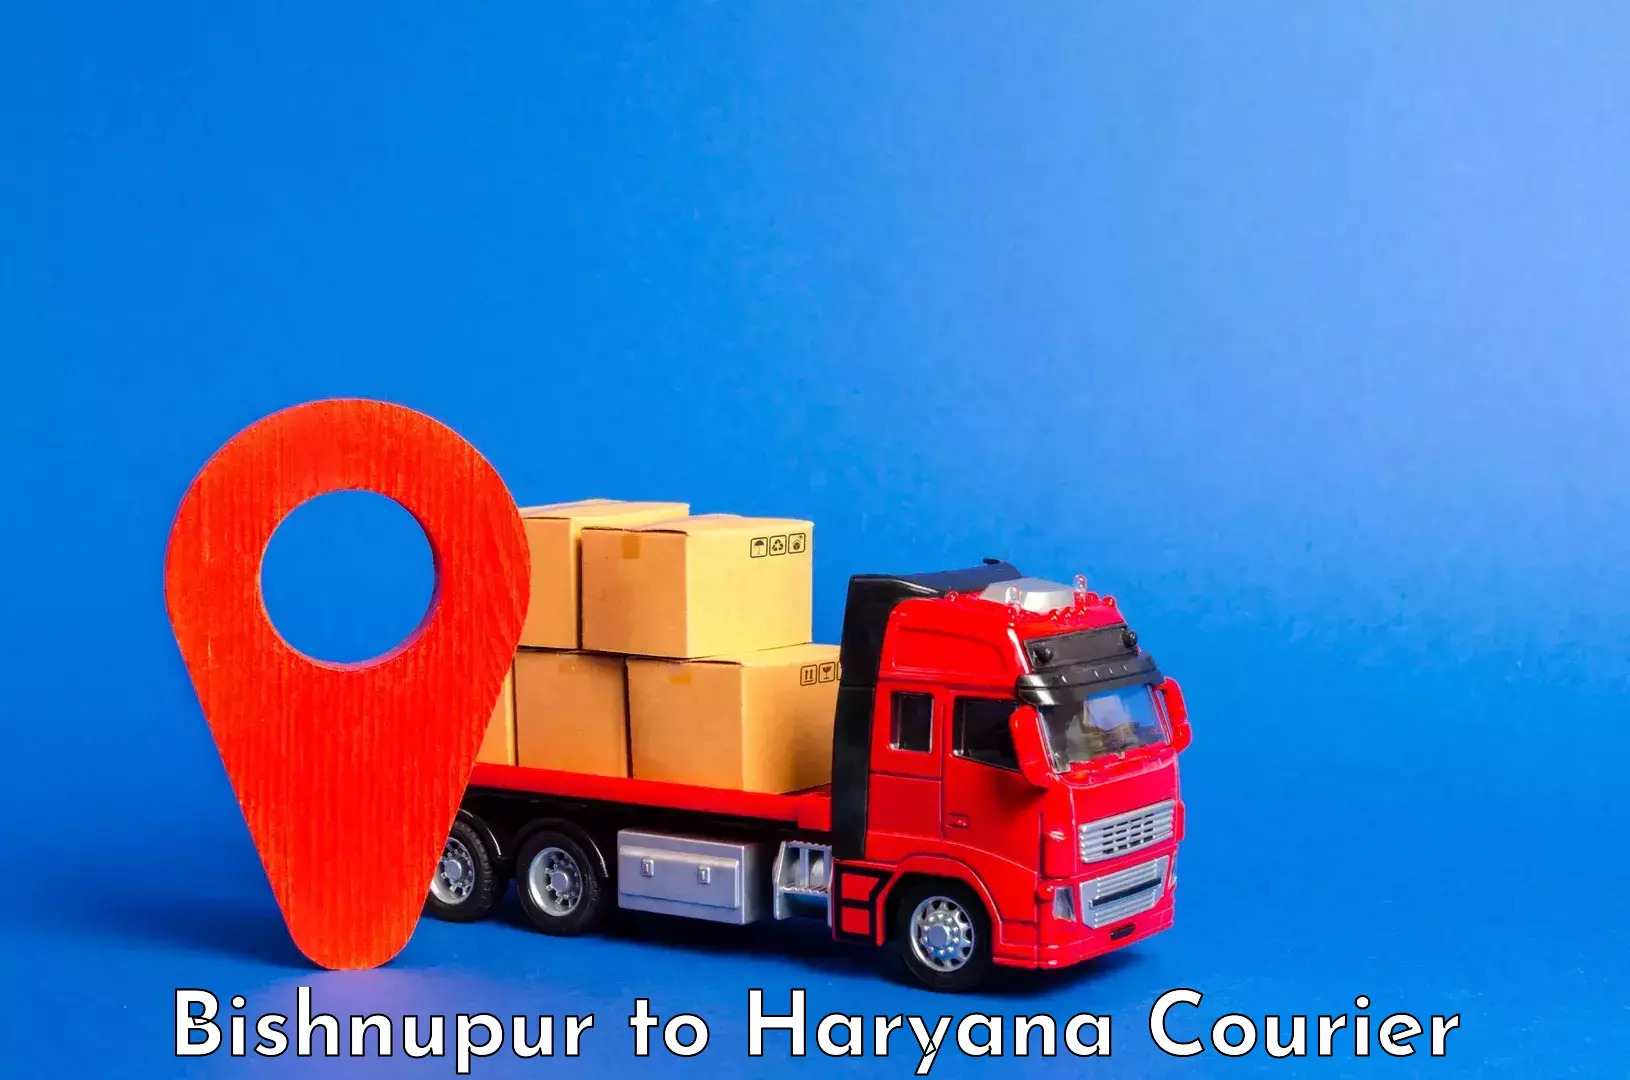 Baggage transport technology Bishnupur to Haryana